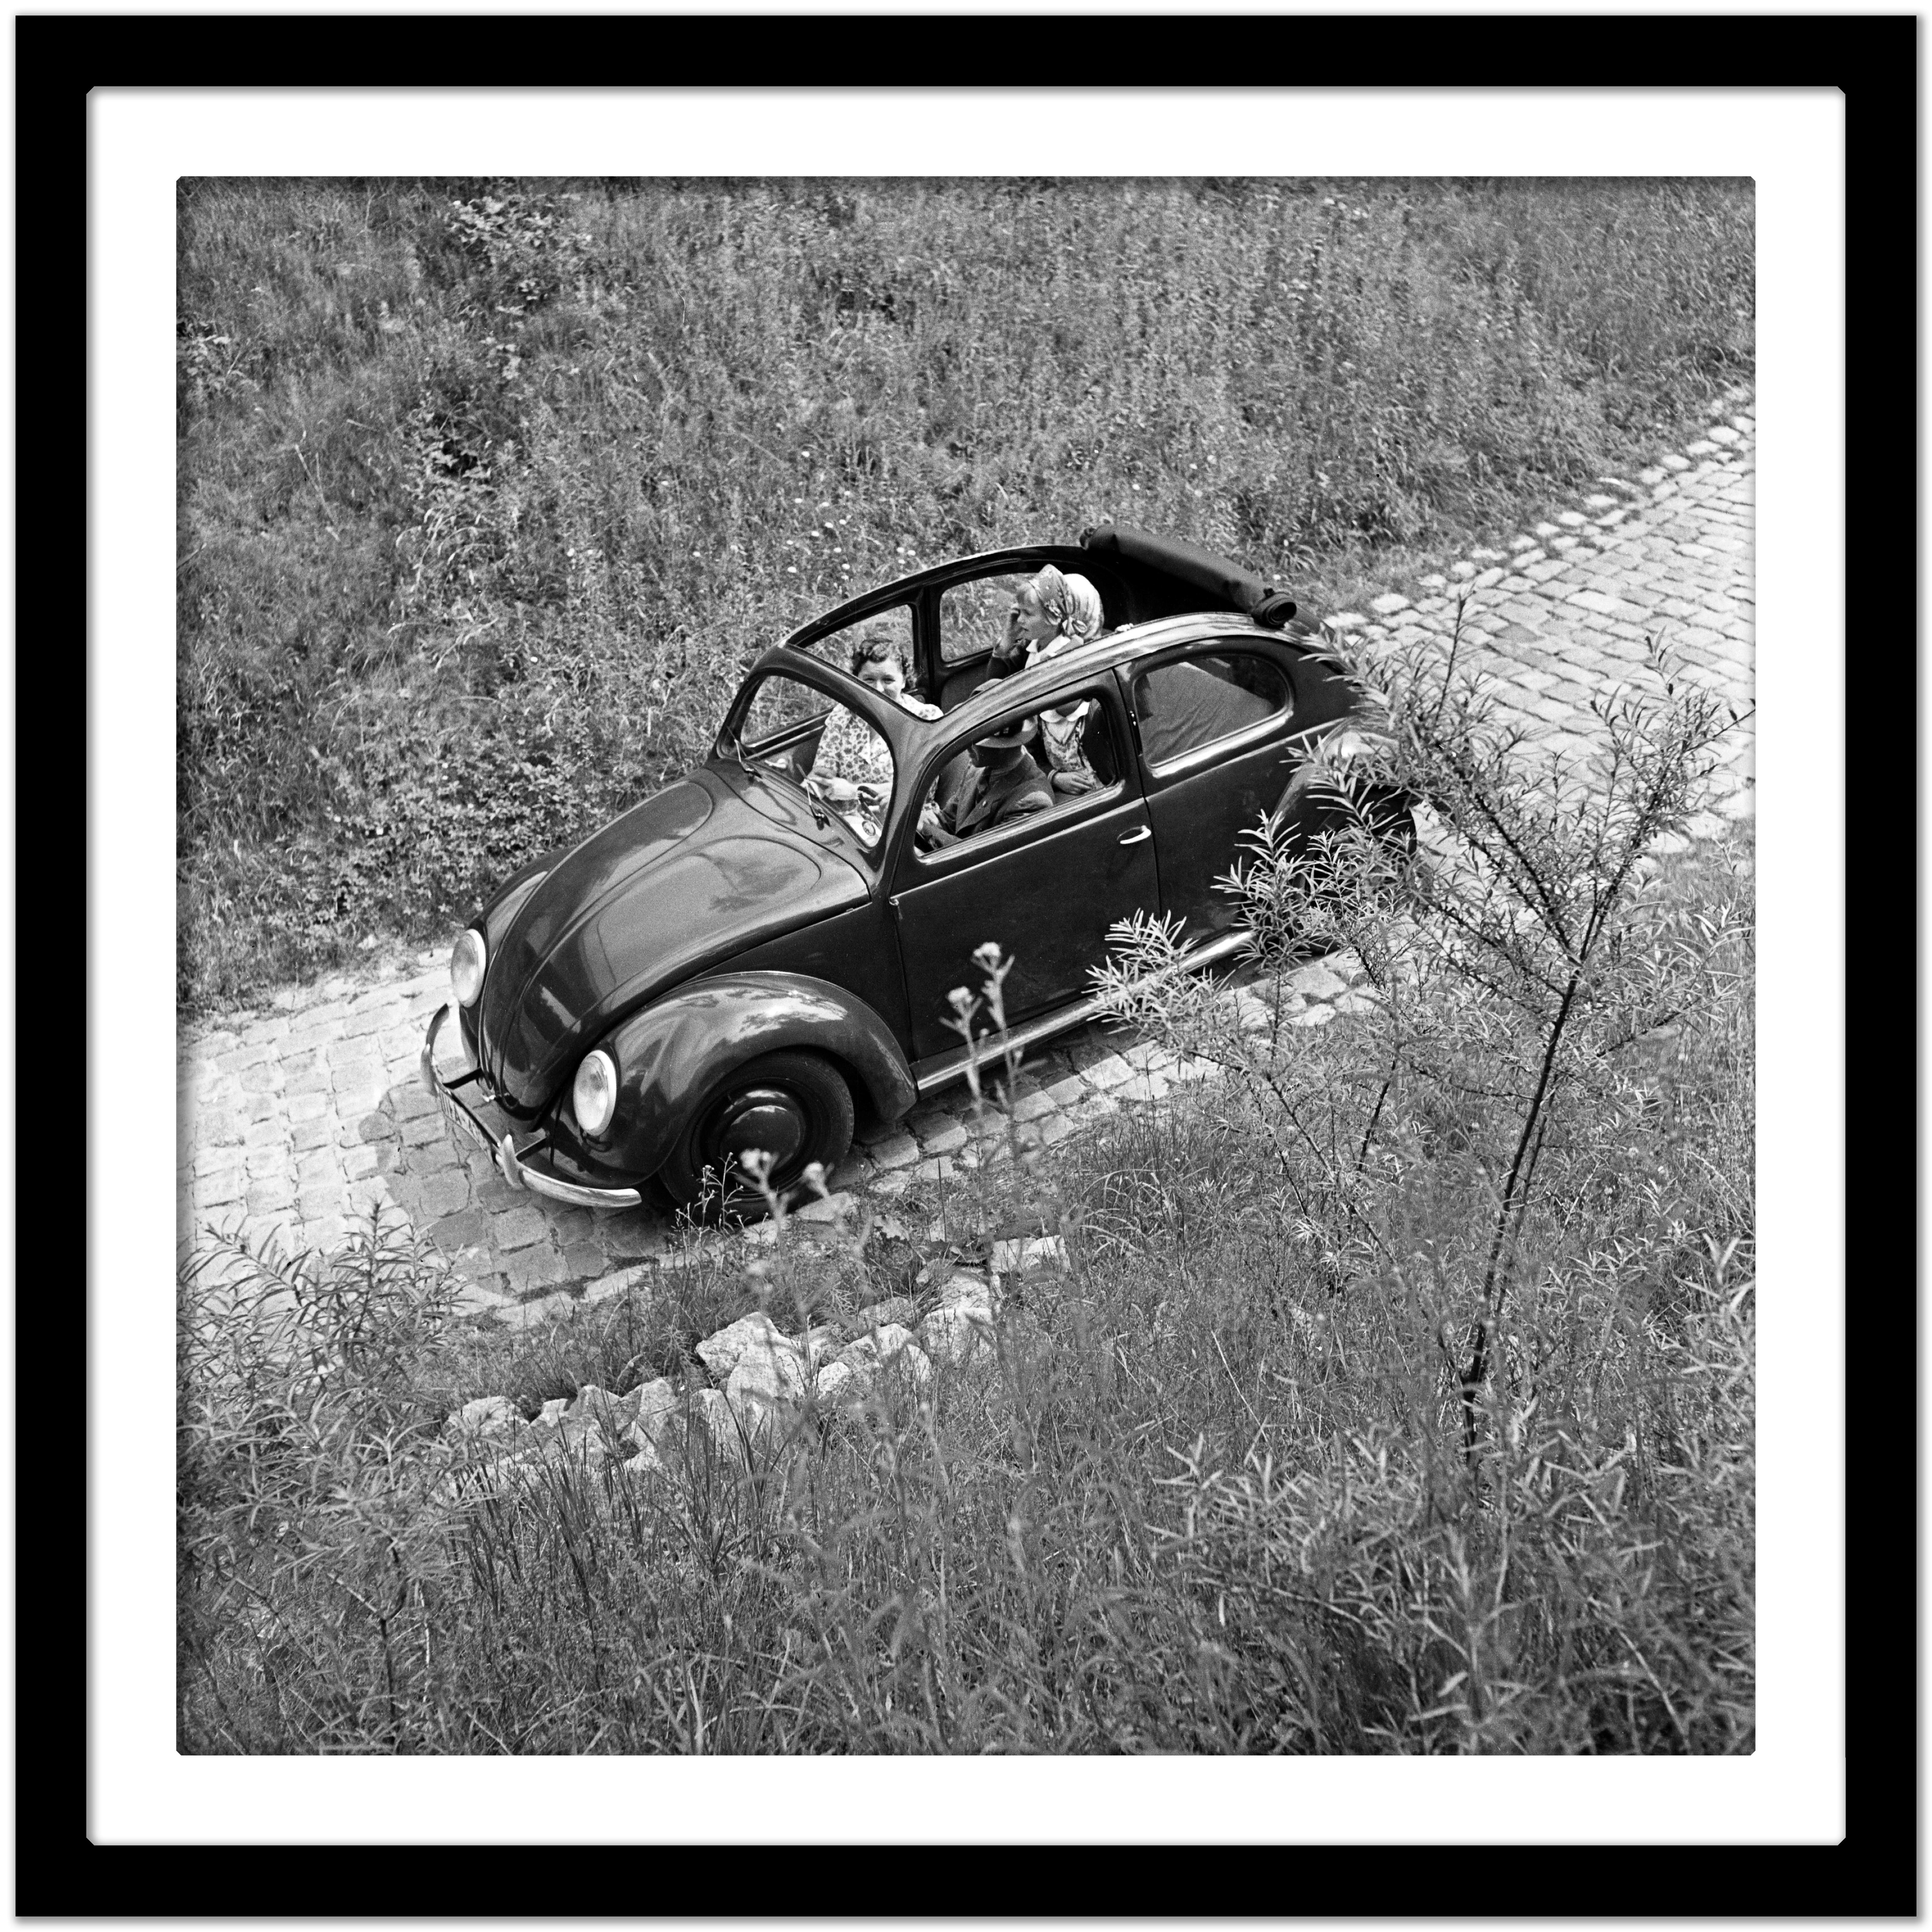 Driving durch Berge im Volkswagen-Käfer, Deutschland 1939 Später gedruckt (Grau), Black and White Photograph, von Karl Heinrich Lämmel